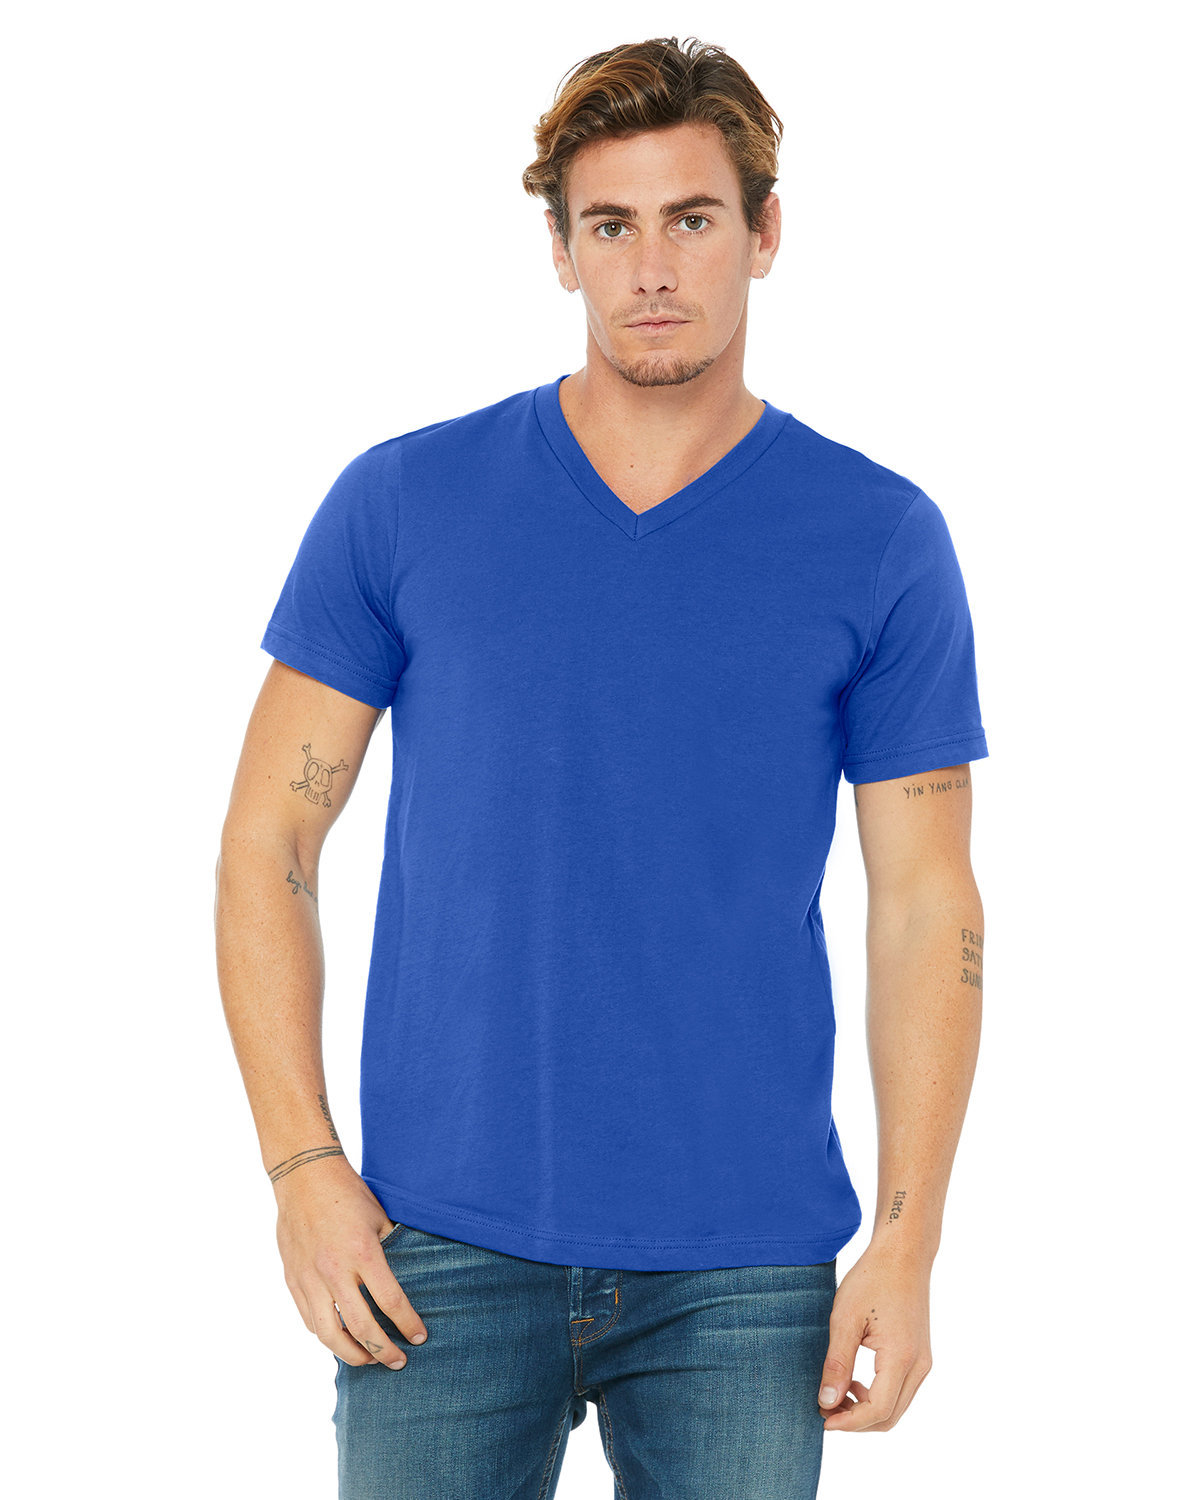 Bella + Canvas Unisex Jersey Short-Sleeve V-Neck T-Shirt TRUE ROYAL 